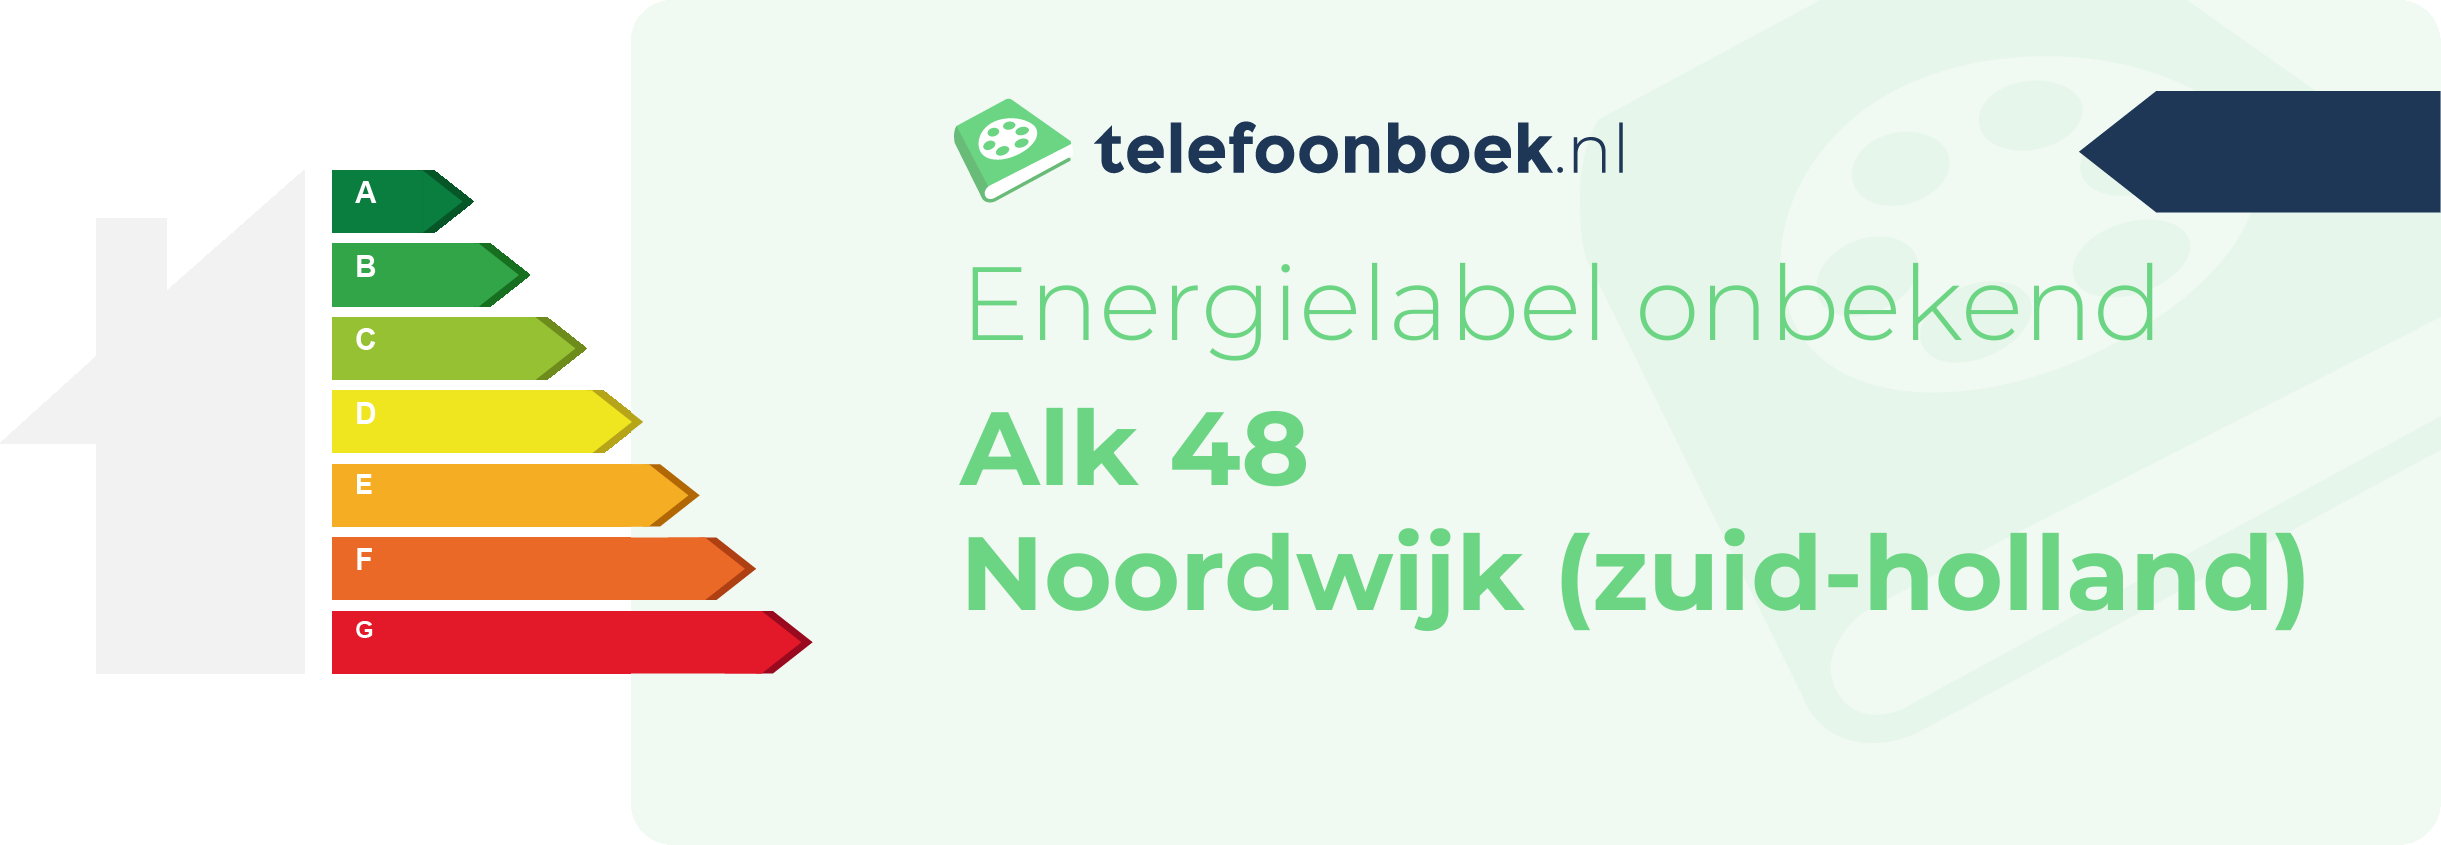 Energielabel Alk 48 Noordwijk (Zuid-Holland)